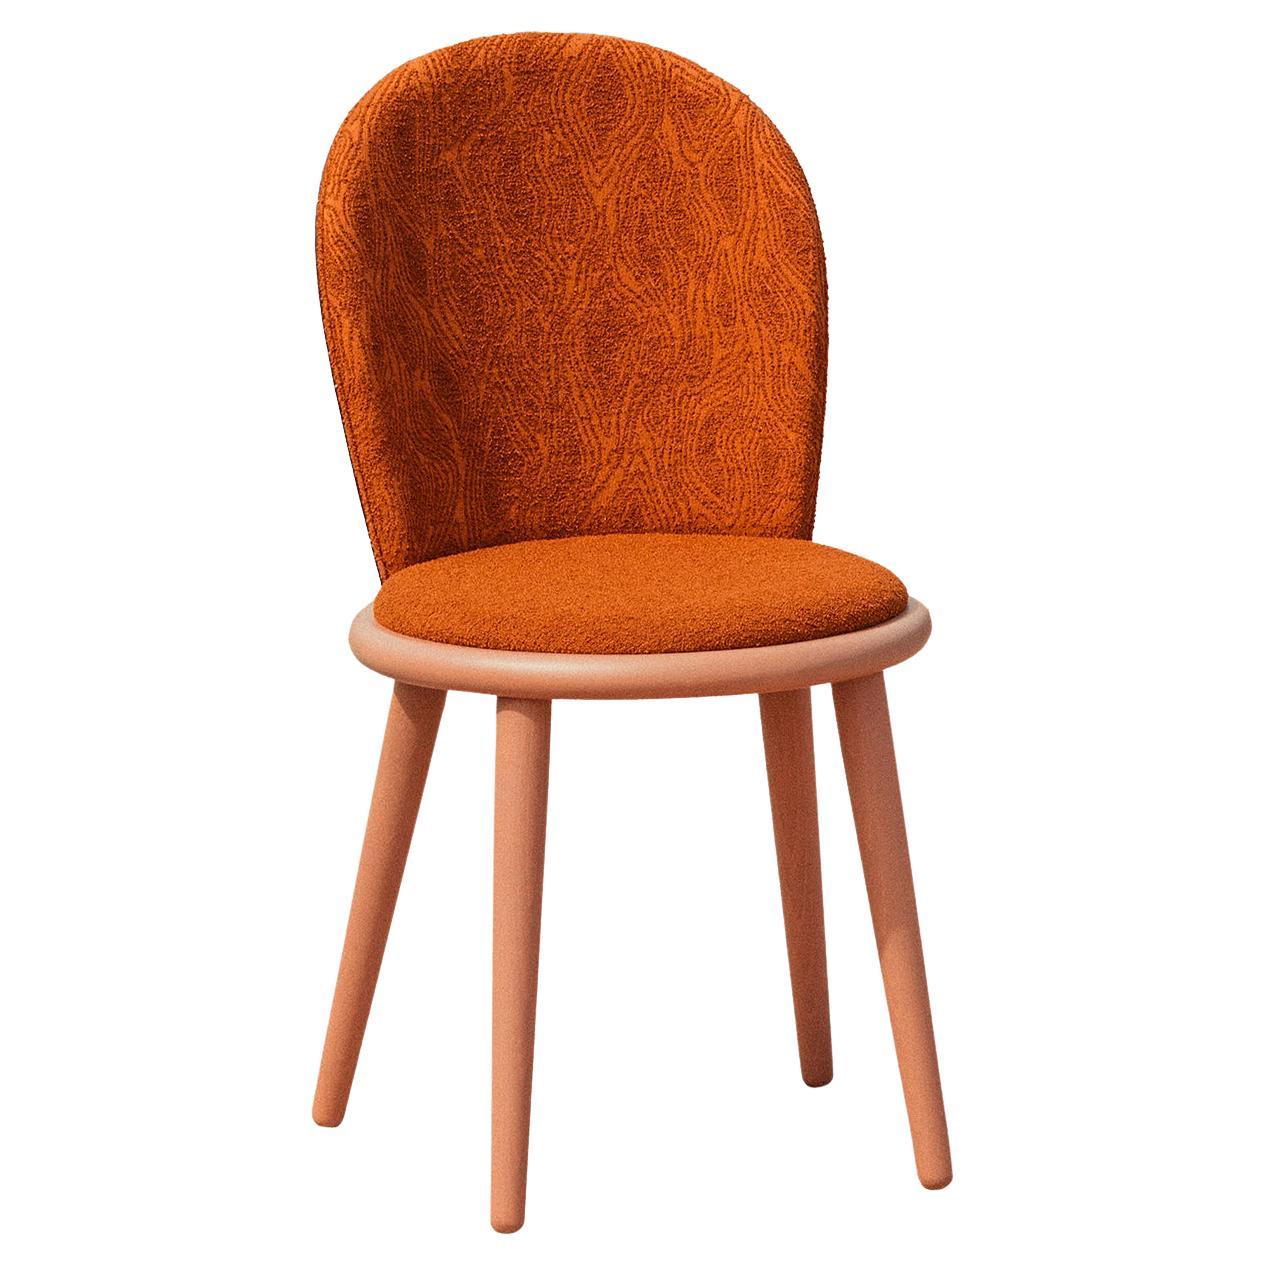 Veretta 921 Orange Chair by Cristina Celestino For Sale